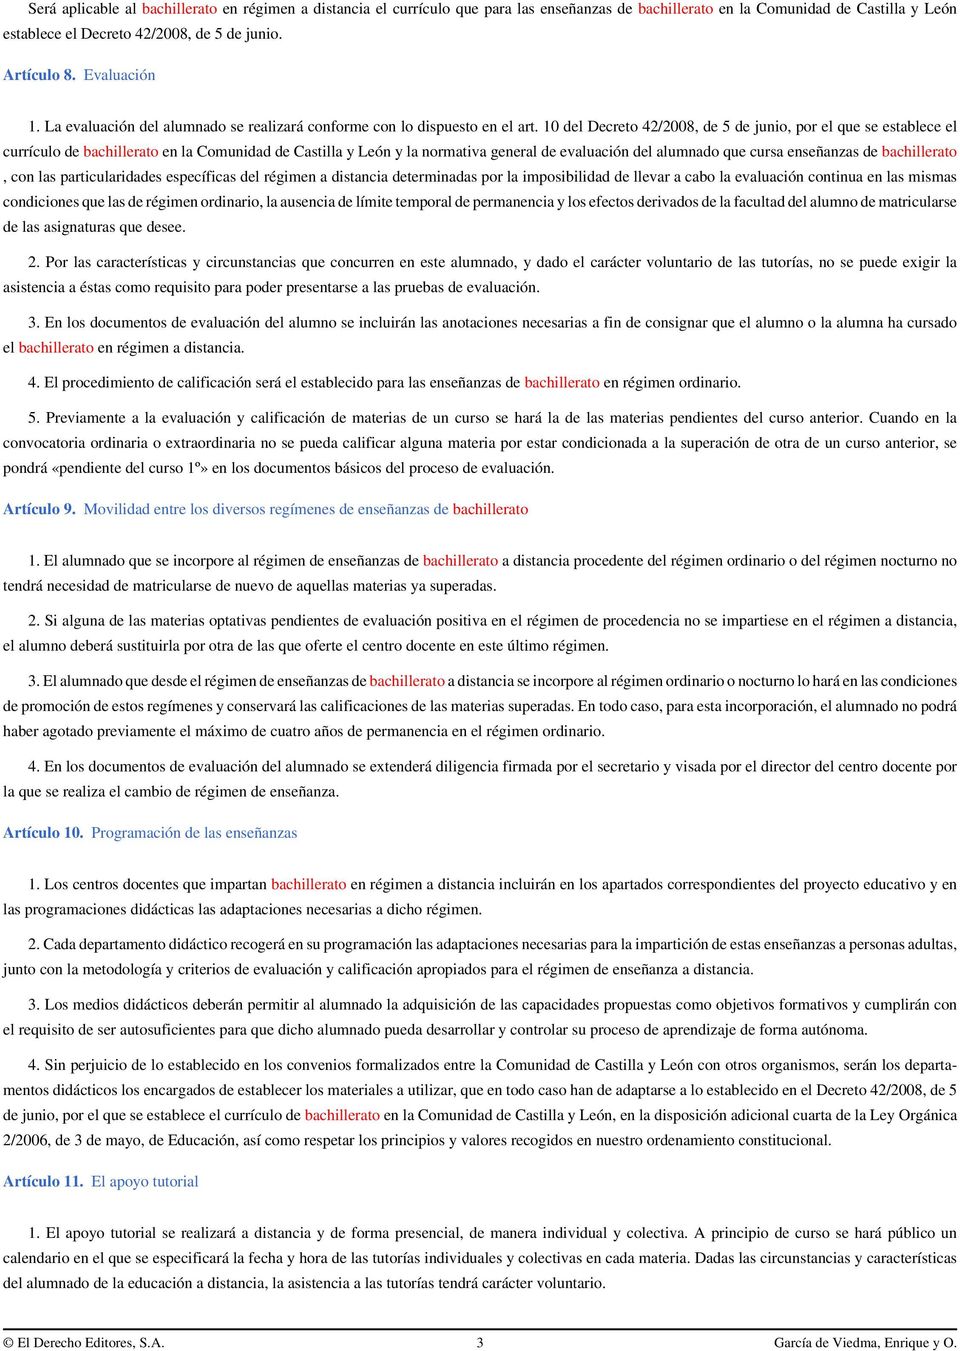 10 del Decreto 42/2008, de 5 de junio, por el que se establece el currículo de bachillerato en la Comunidad de Castilla y León y la normativa general de evaluación del alumnado que cursa enseñanzas